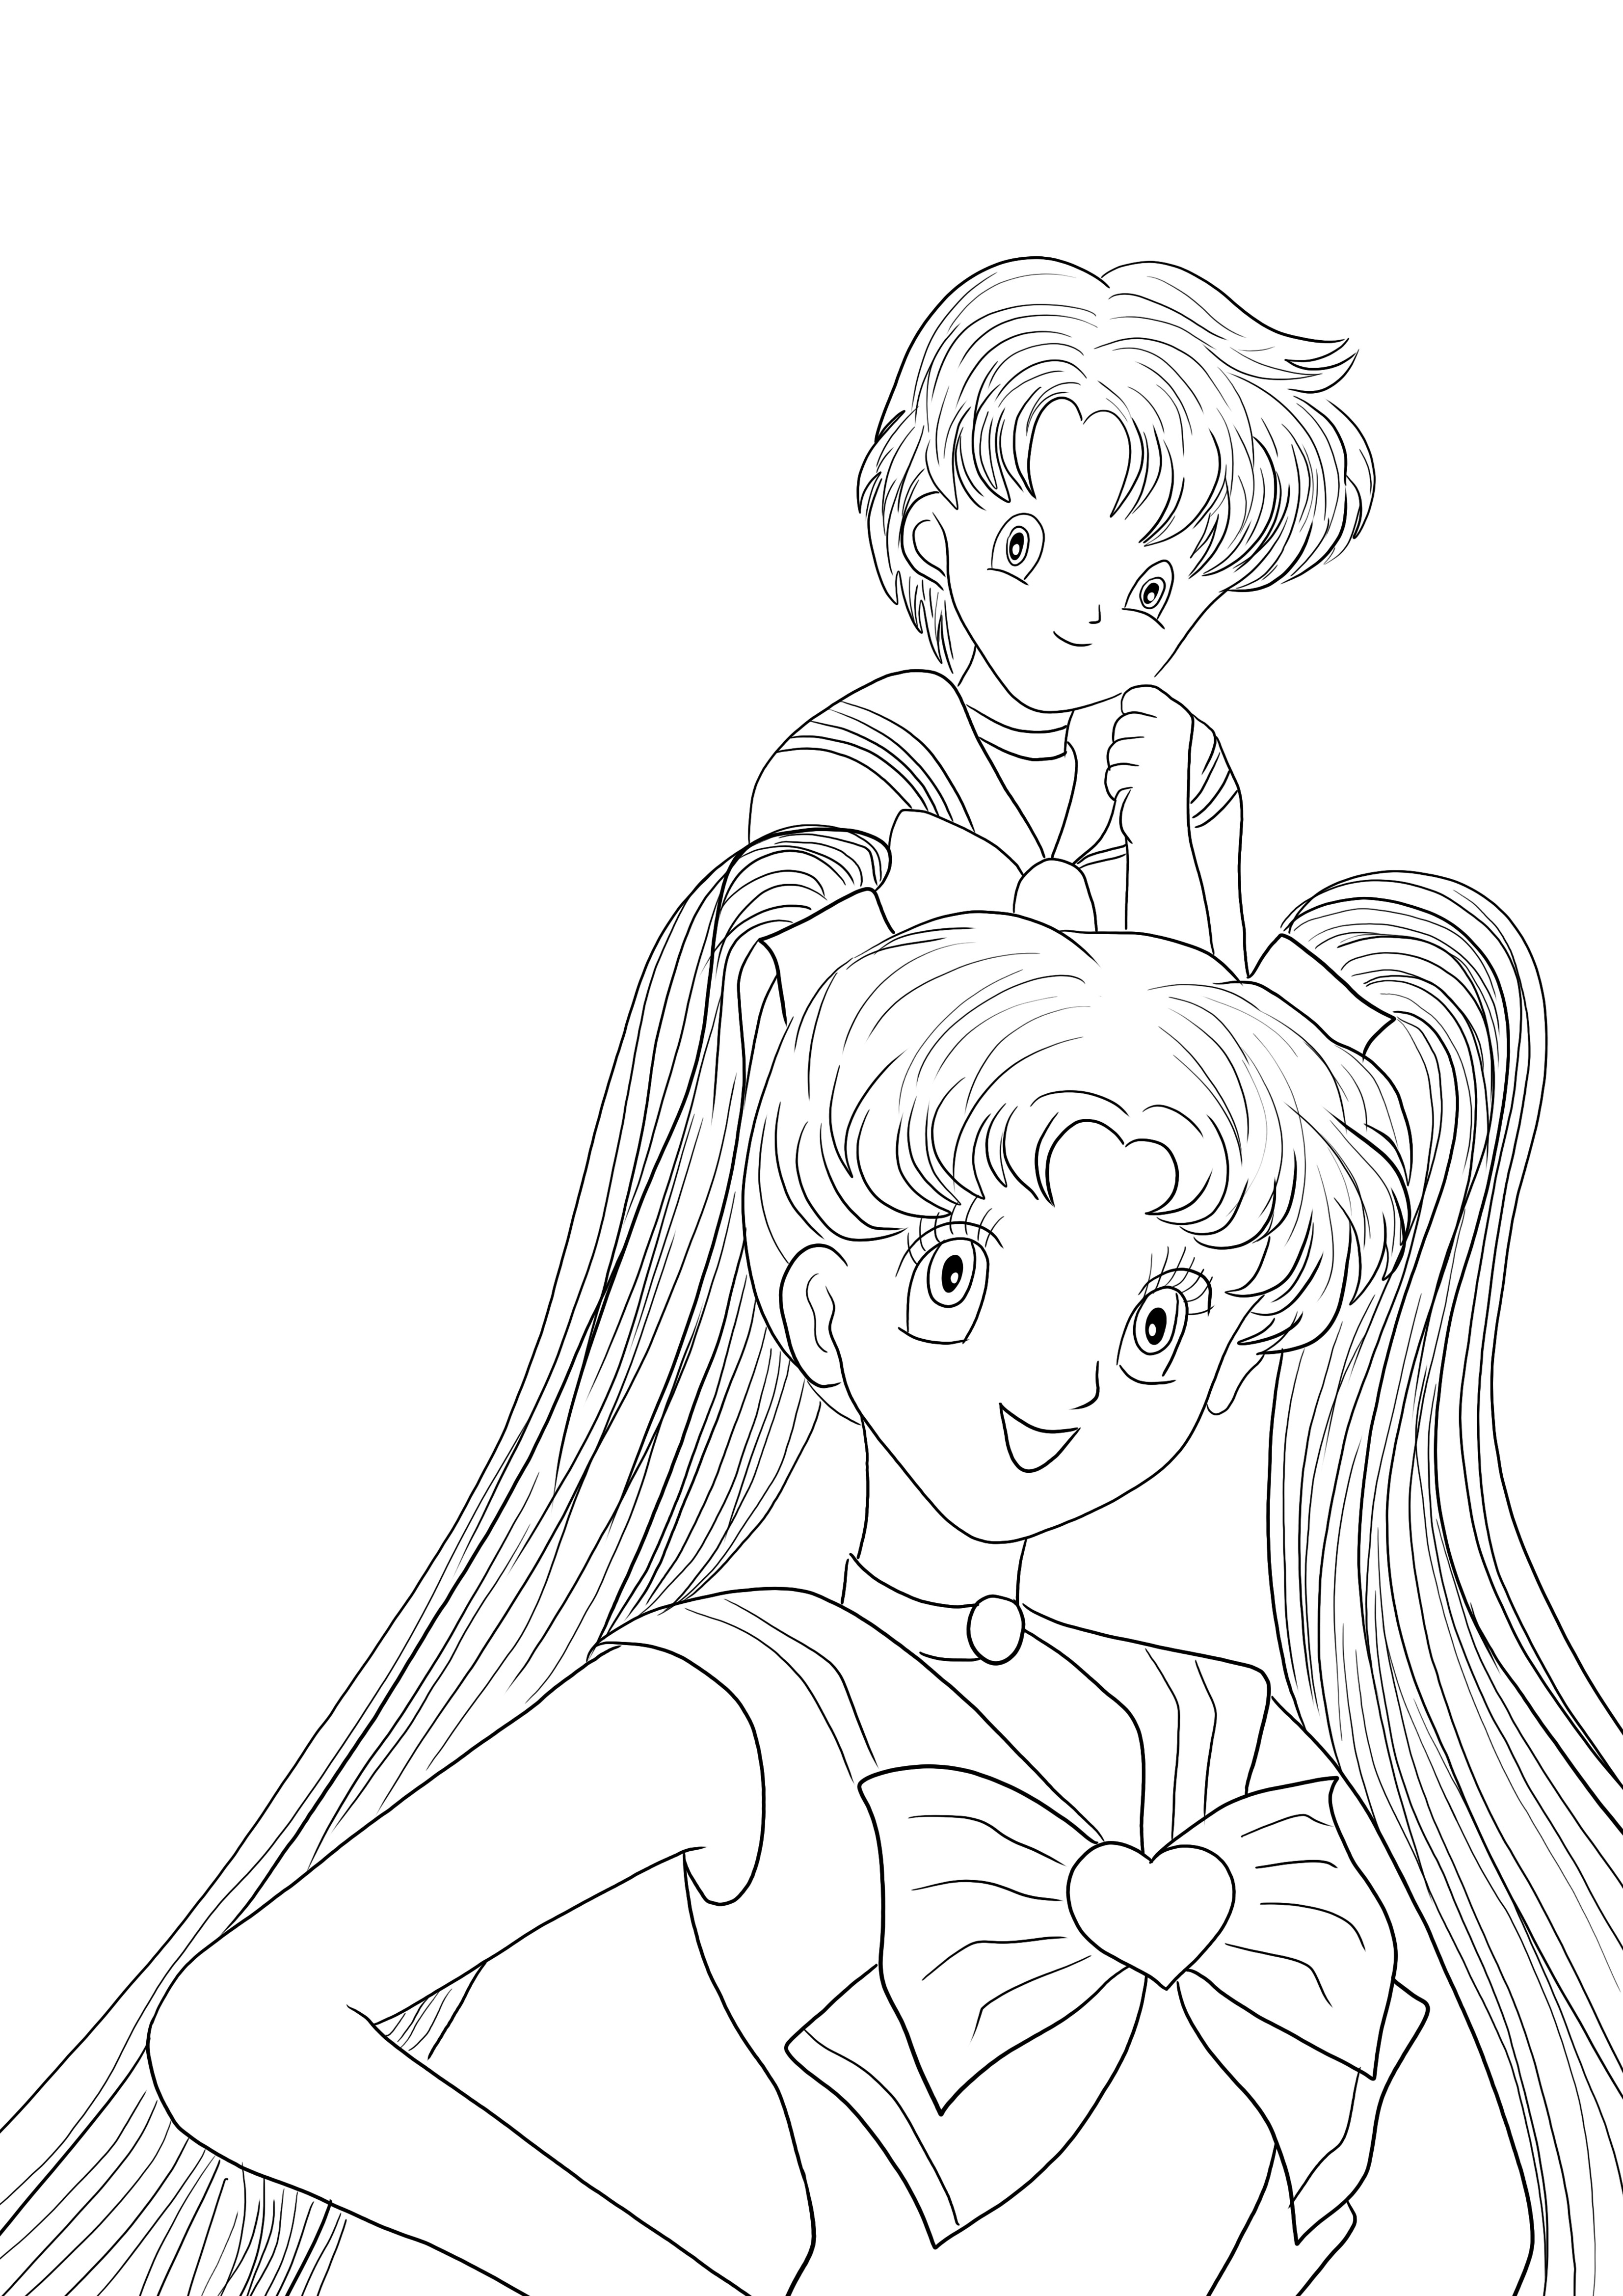 Aquí hay una hoja para colorear de Sailor Moon Girls de descarga gratuita para que los niños la coloreen.